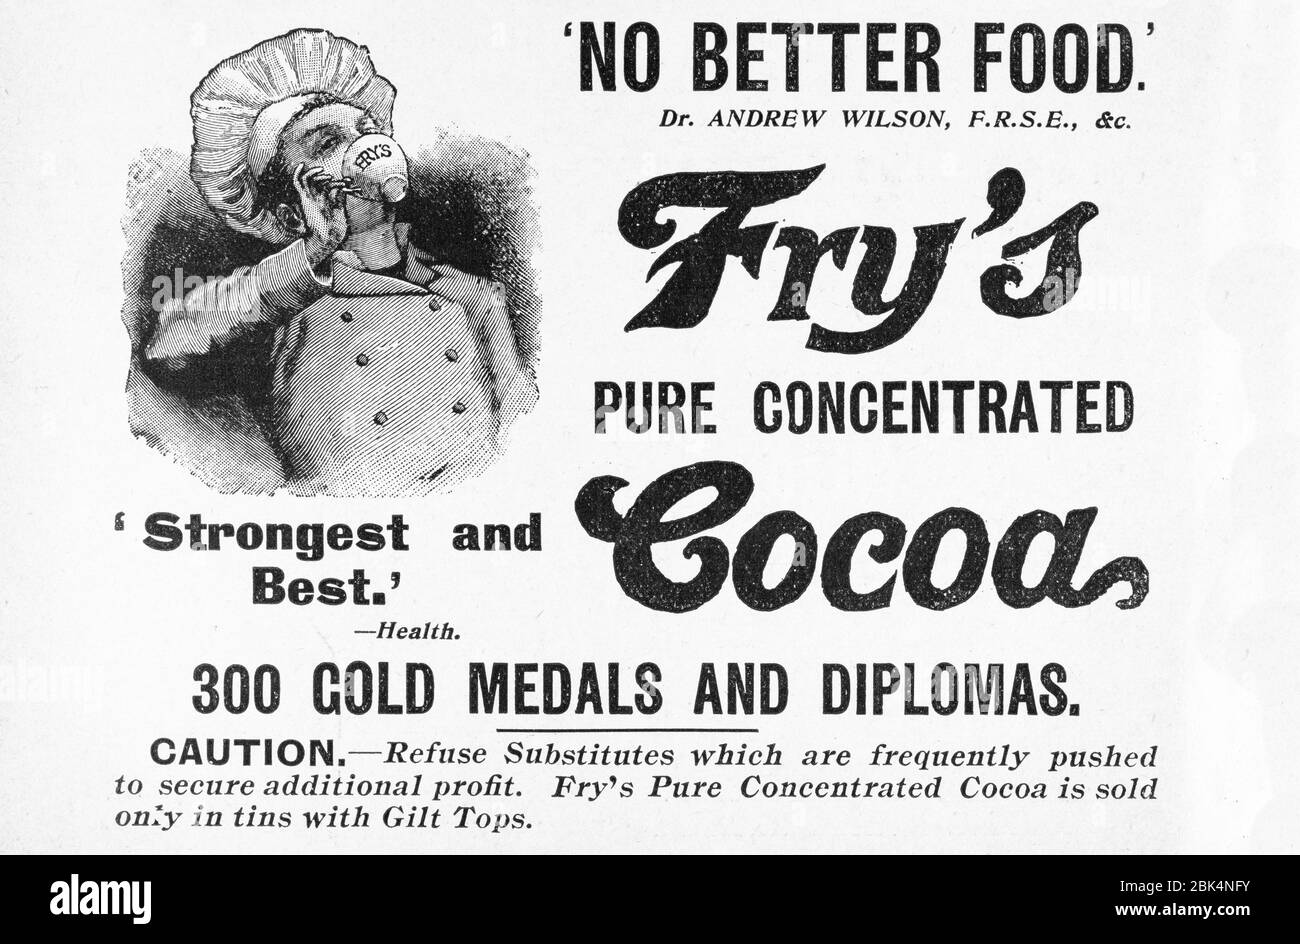 Old Victorian Fry's pubblicità di cibo al cioccolato a partire dai primi del 1900, nei giorni prima degli standard pubblicitari. Pubblicità di prodotti alimentari vecchi, annunci di prodotti alimentari vecchi. Foto Stock